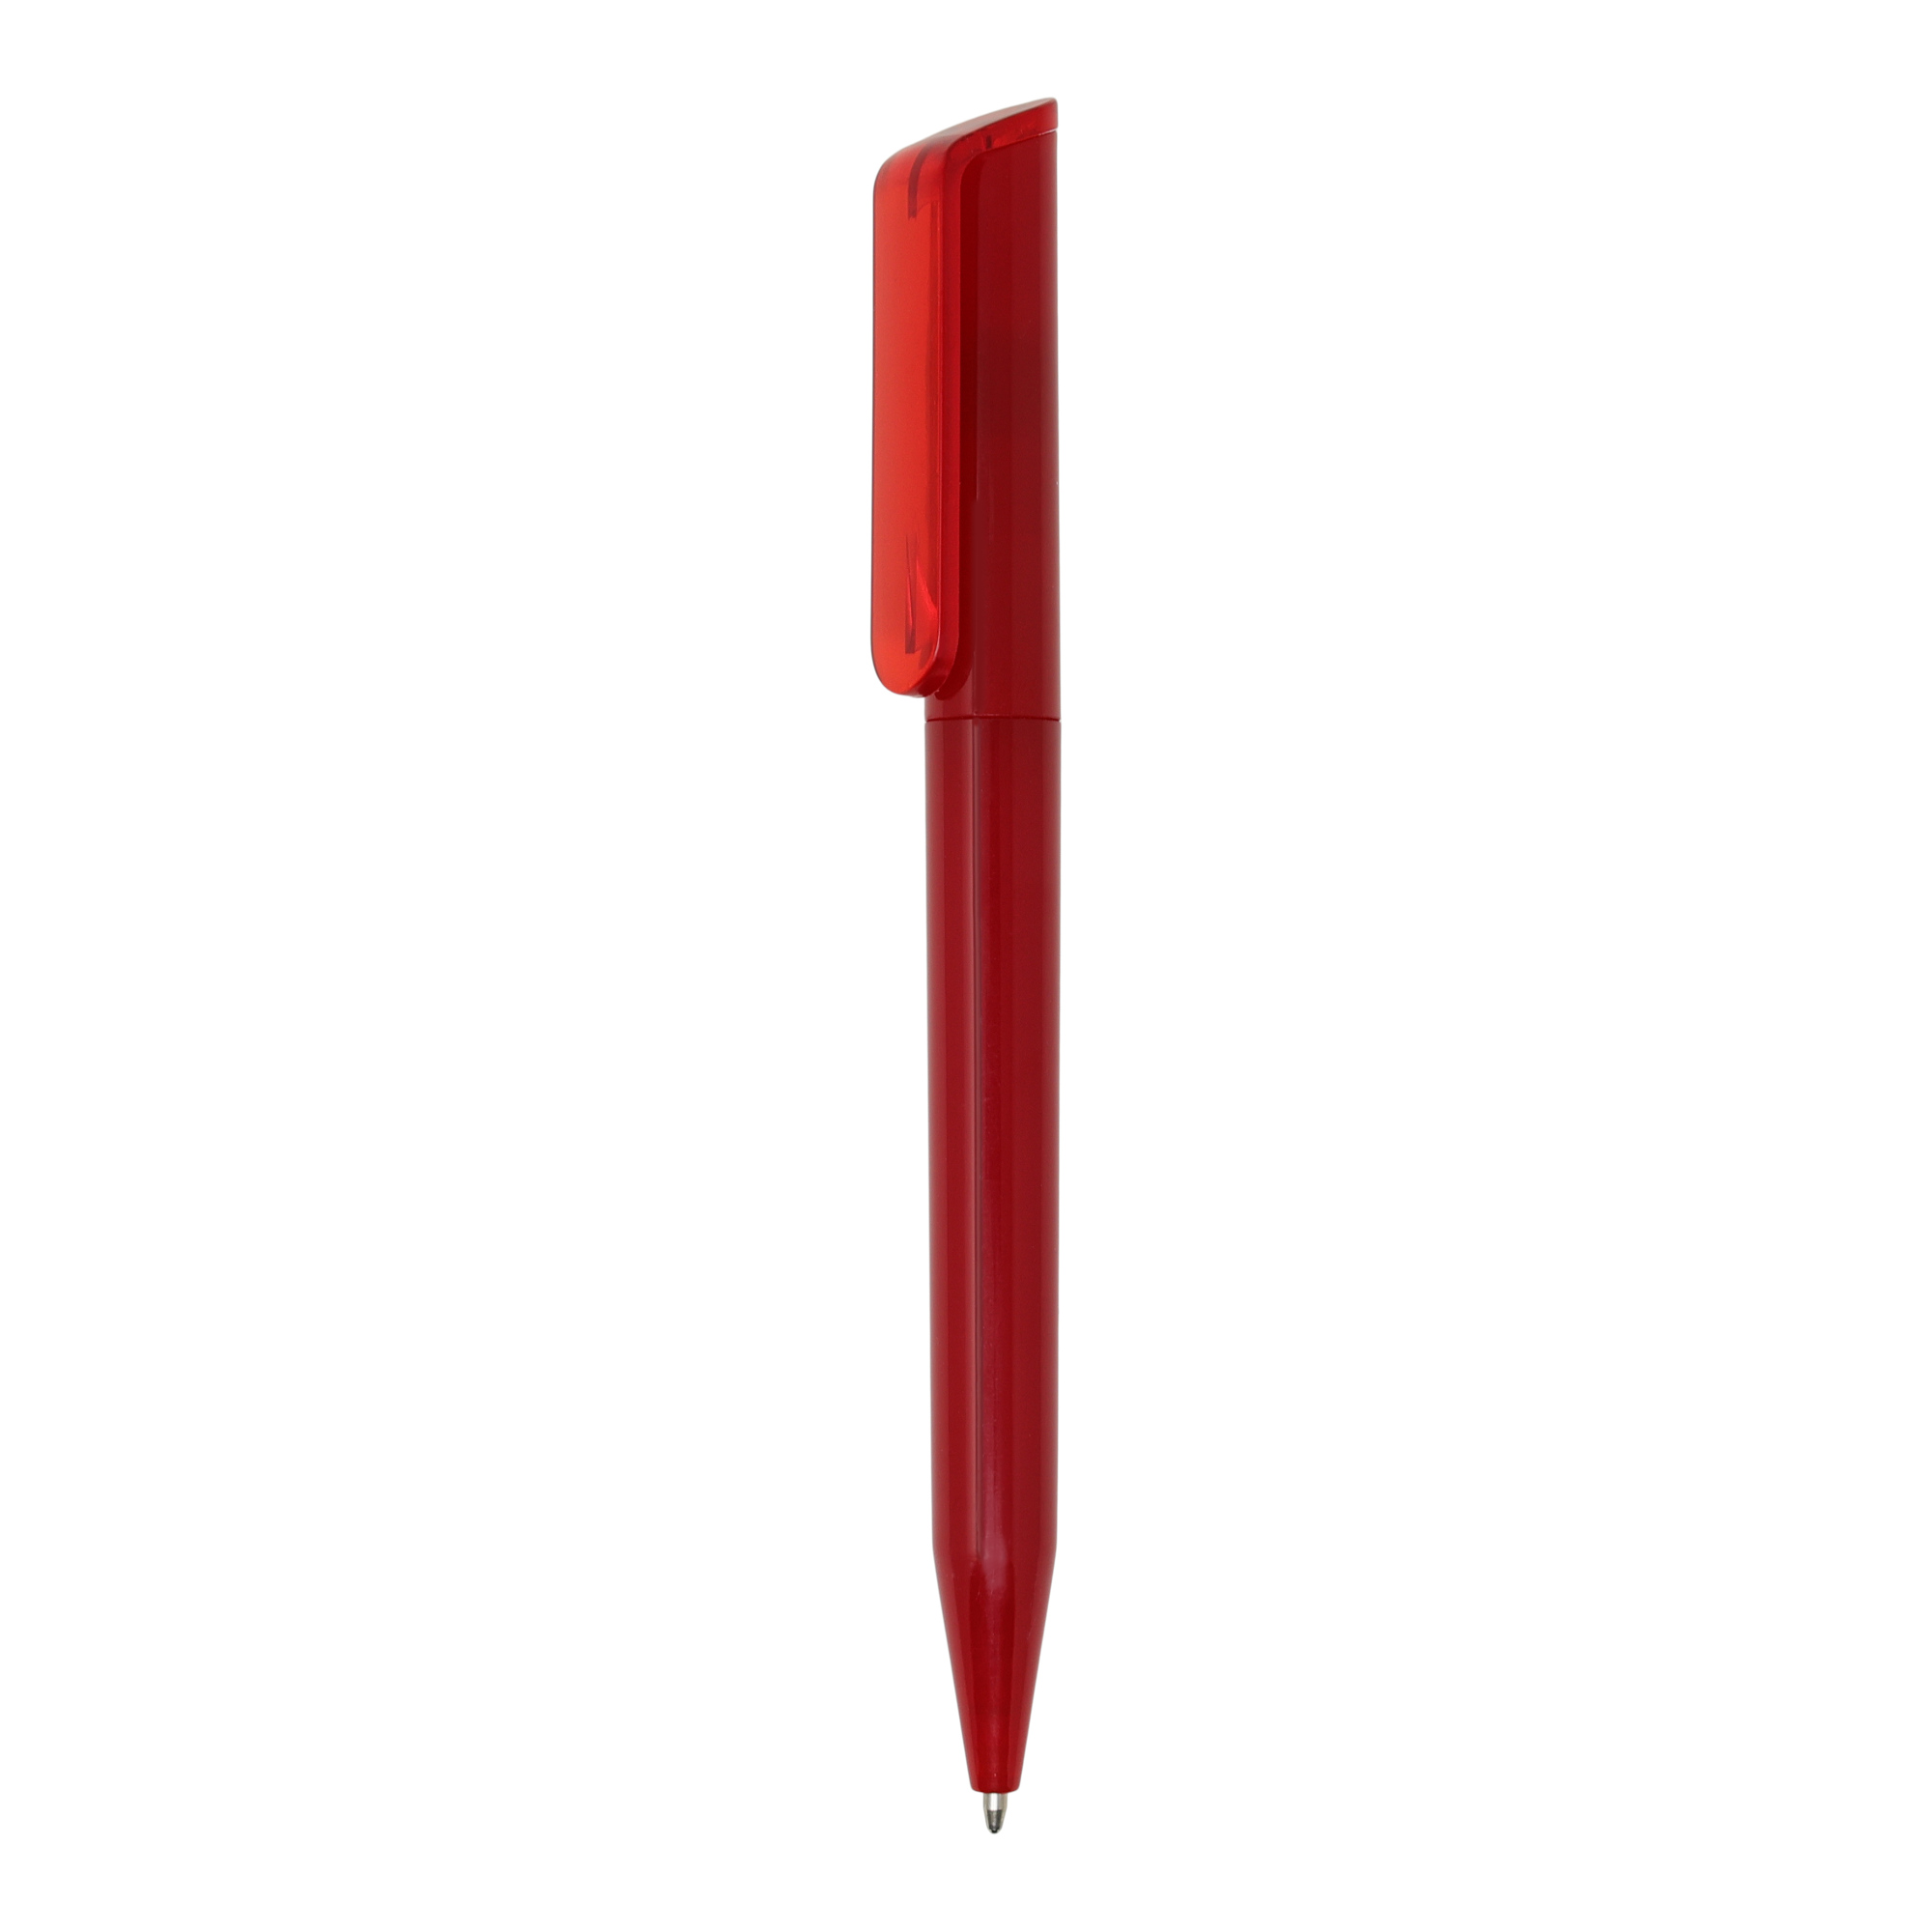 Bolígrafo Aspen
Color rojo